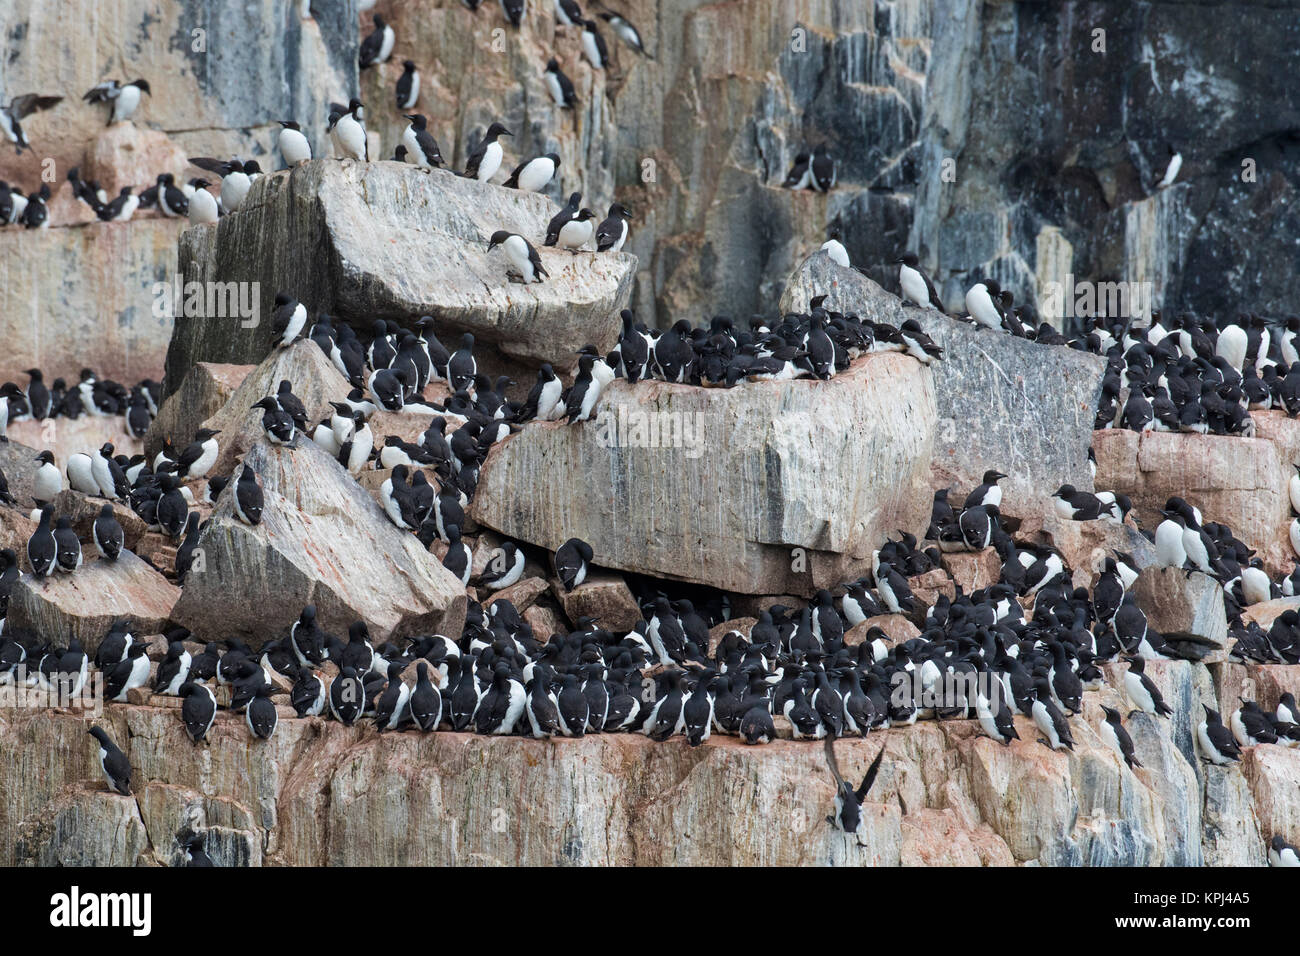 La falaise Alkefjellet, colonie d'oiseaux marins du logement de guillemots de Brünnich guillemot de Brünnich / (Uria lomvia) à l'Hinlopenstretet, Svalbard, Norvège Banque D'Images